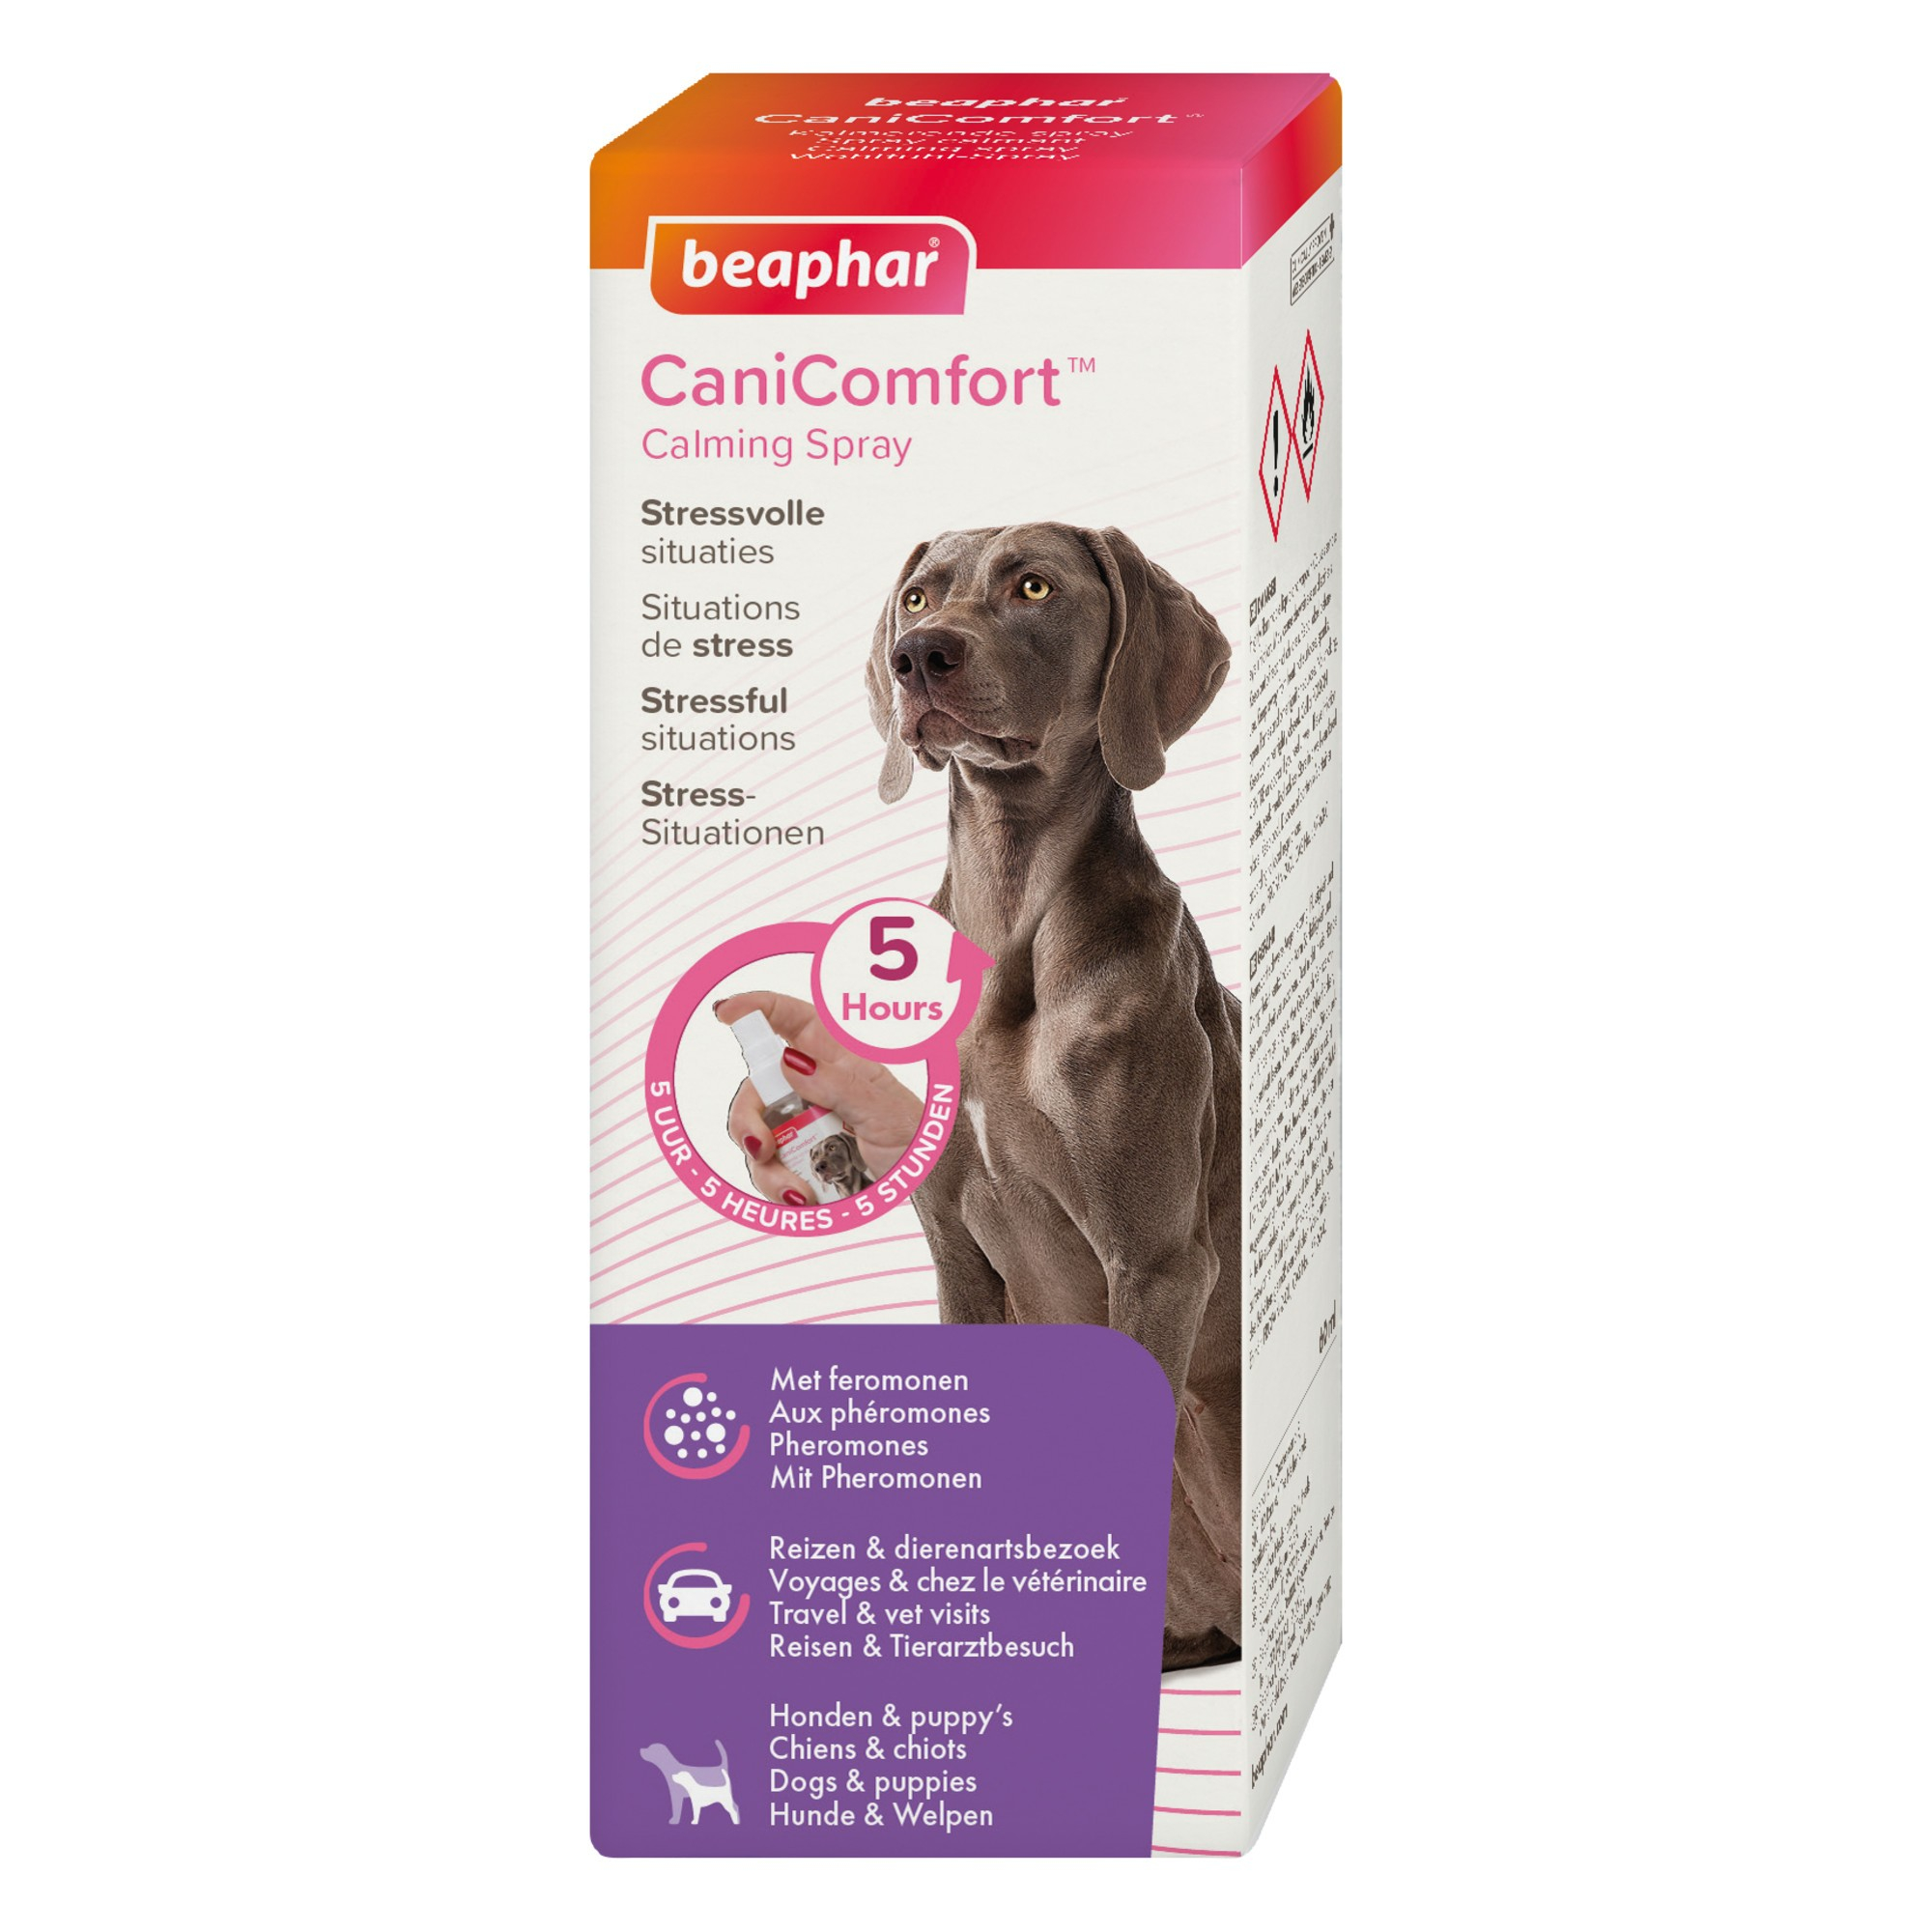 CaniComfort, ein beruhigendes Spray mit Pheromonen für Hunde und Welpen